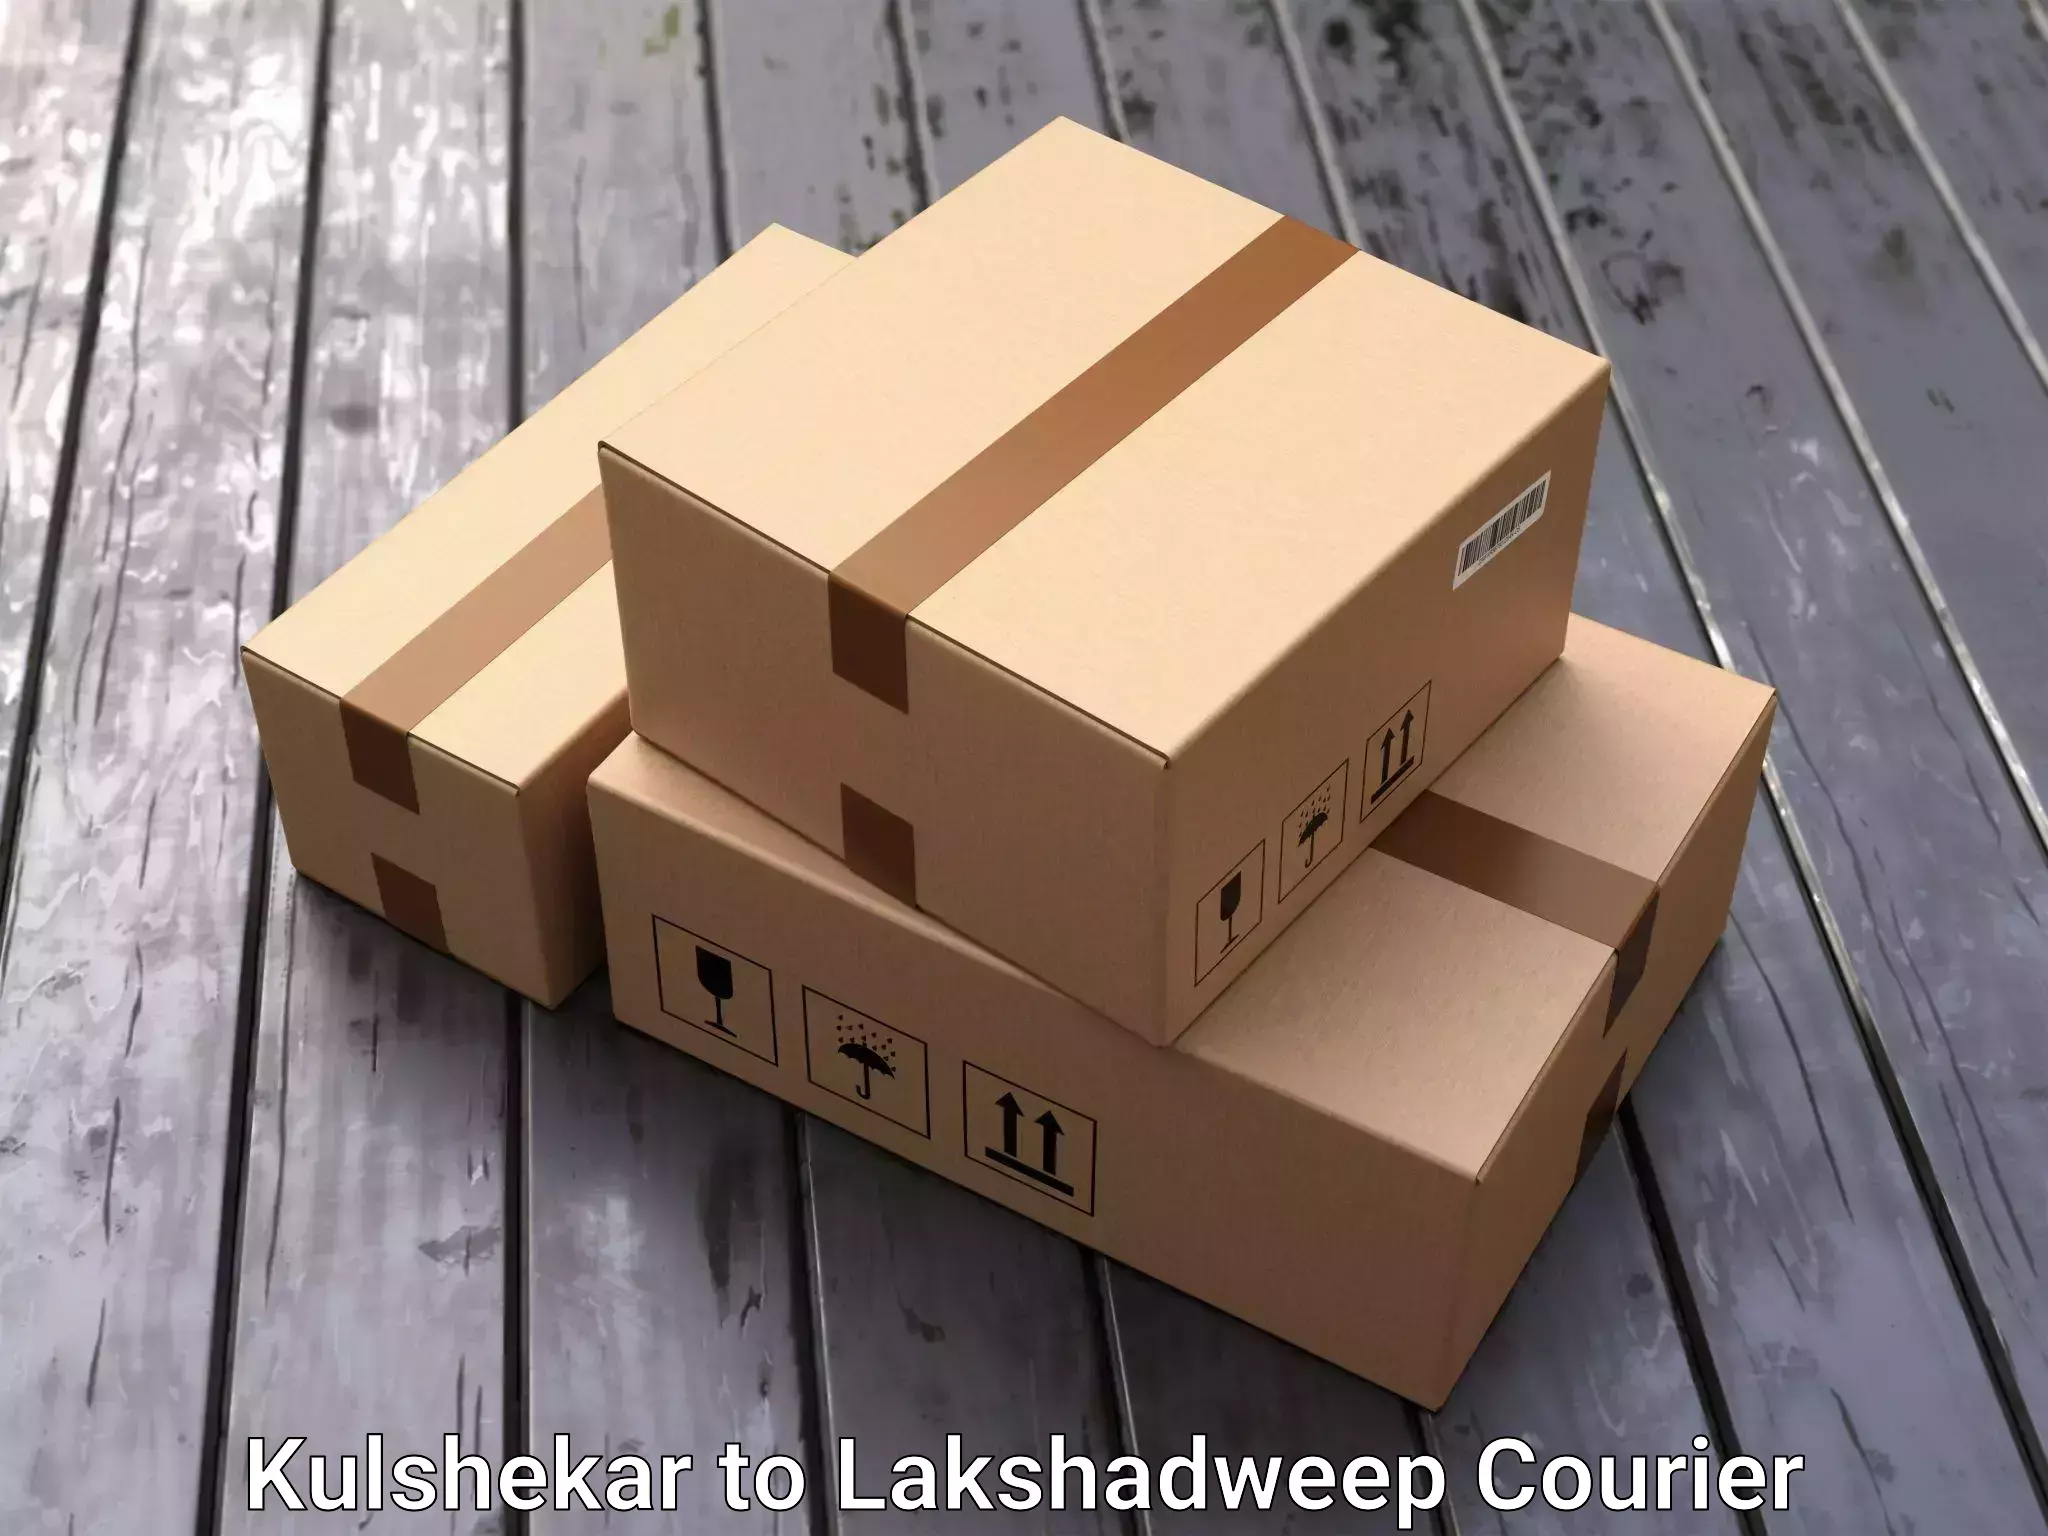 Home shifting experts Kulshekar to Lakshadweep